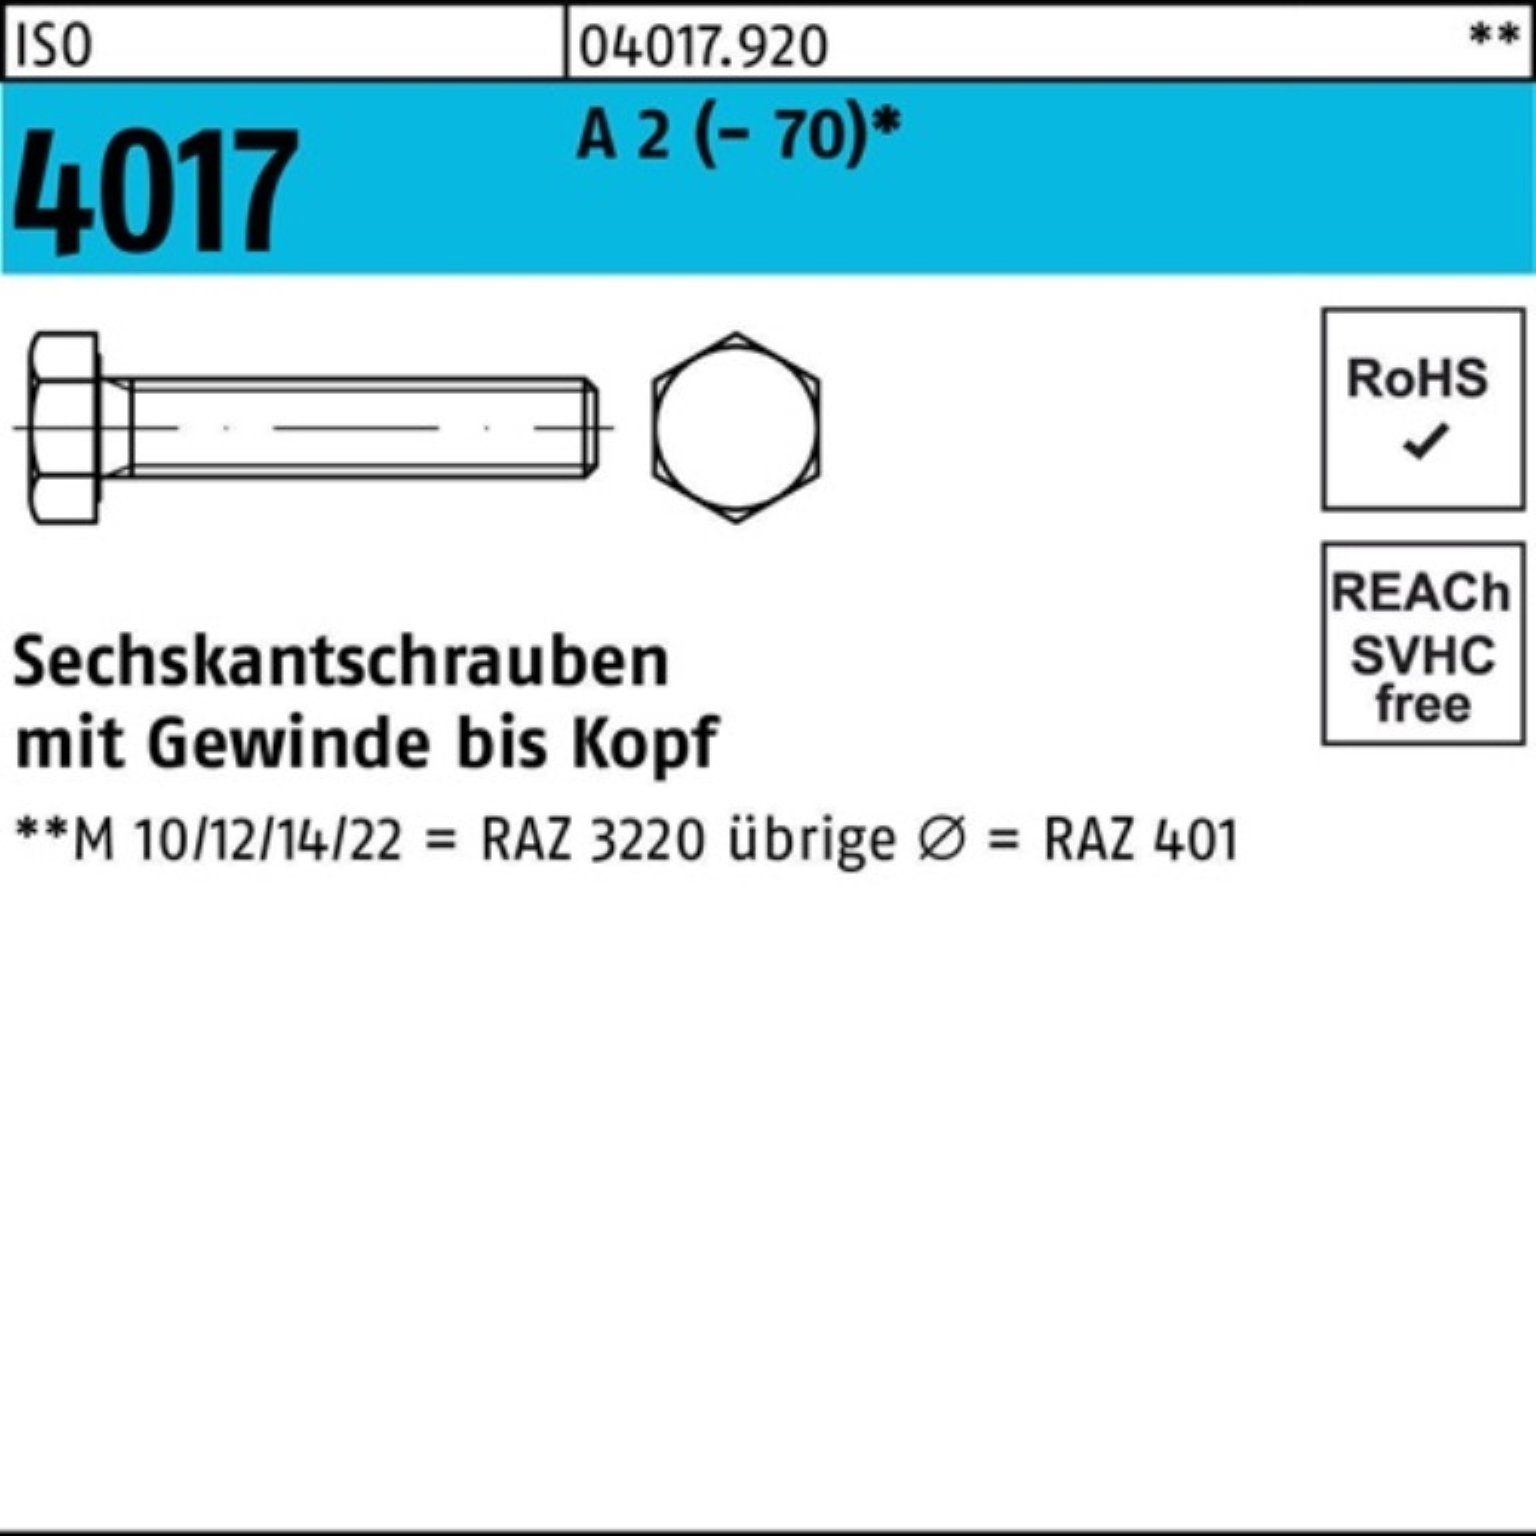 Bufab Sechskantschraube 100er Pack Sechskantschraube M30x 4017 Stück 100 1 (70) ISO VG A 2